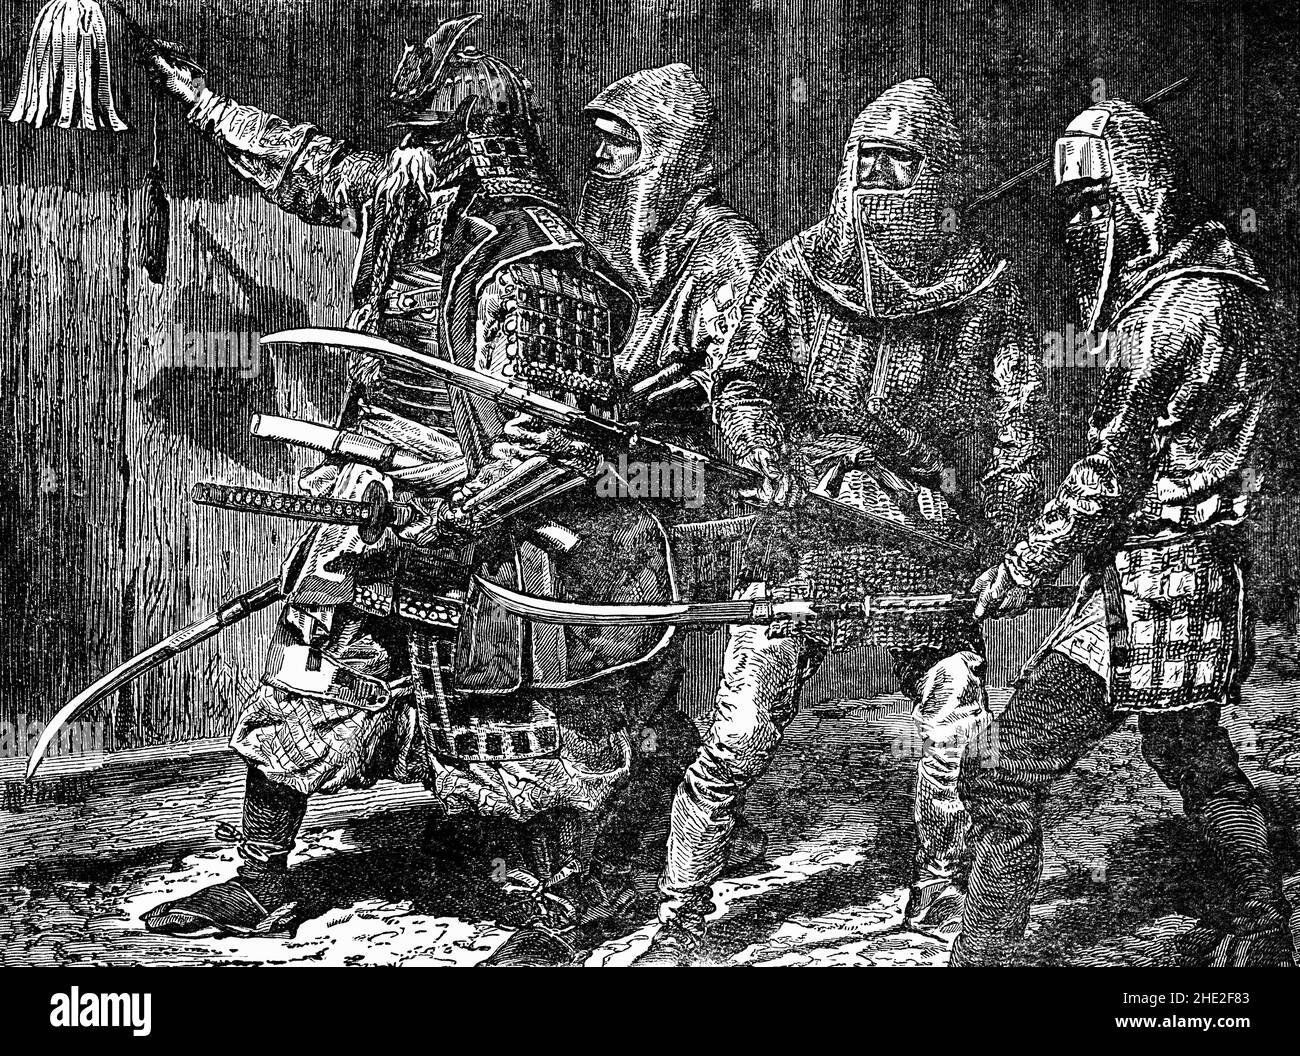 Illustration de la fin du siècle 19th des guerriers de Samouraï (ou bushi) de l'ancien Japon.Ils ont constitué la classe militaire au pouvoir, qui est finalement devenue la caste sociale la plus élevée de la période Edo (1603-1867).Samouraï utilisait des arcs et des flèches, des lances, des armes, mais leur arme principale et leur symbole était l'épée.Ils mènent des vies selon le code d'éthique du bushido (« la voie du guerrier »).Fortement confucianiste par nature, bushido a souligné la loyauté à son maître, à sa discipline personnelle et à son comportement respectueux et éthique.De nombreux samouraïs ont également été attirés par les enseignements et les pratiques du bouddhisme zen. Banque D'Images